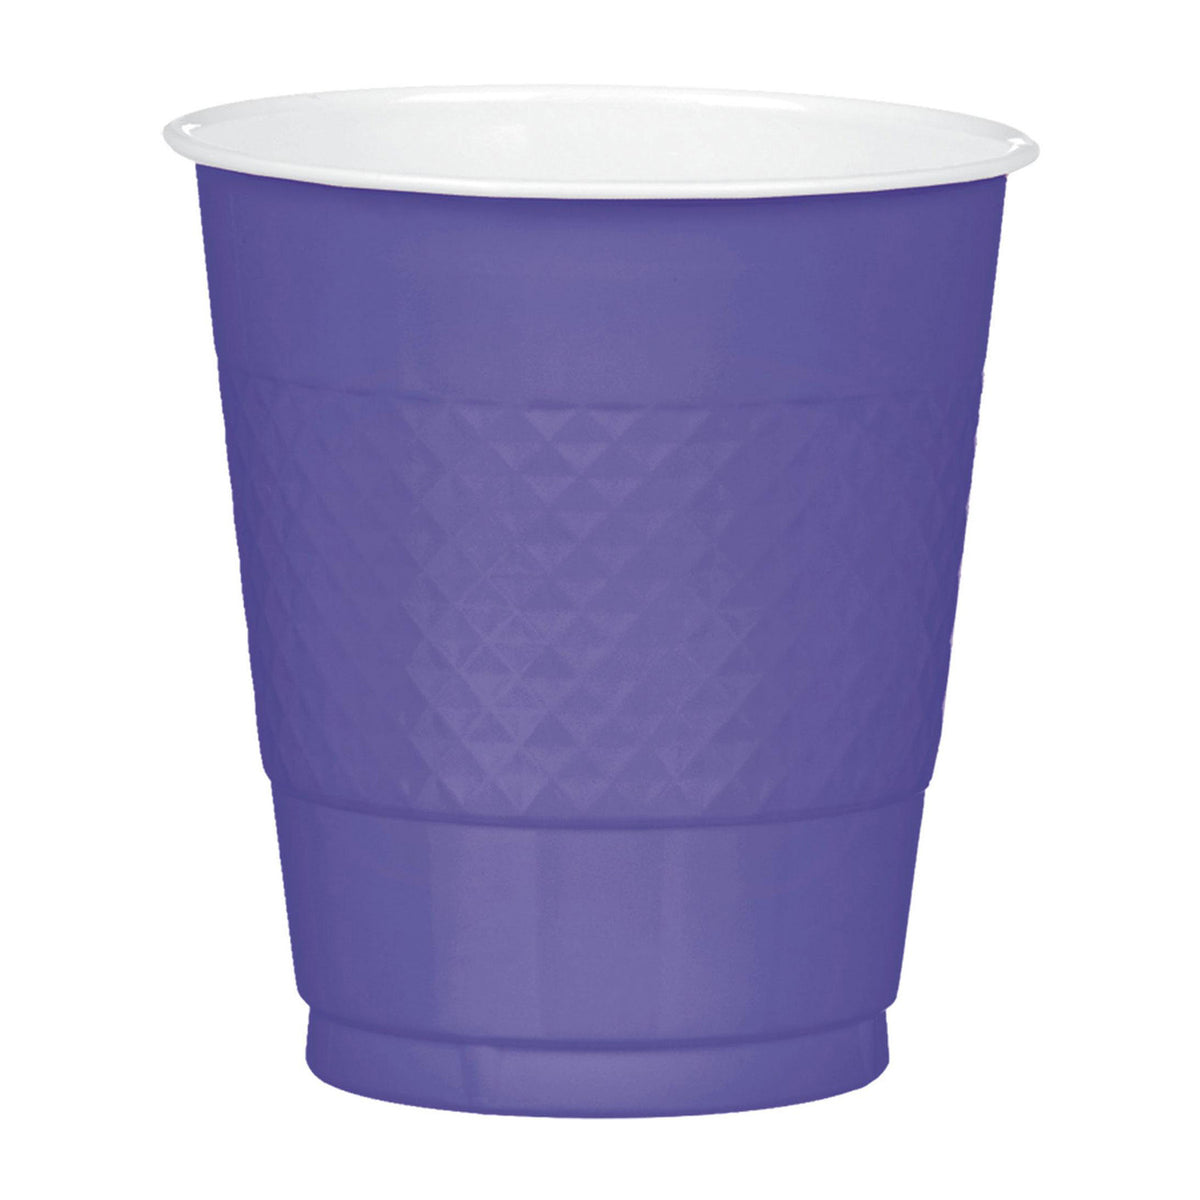 20 Pieces Plastic Cup Set , Royal blue color